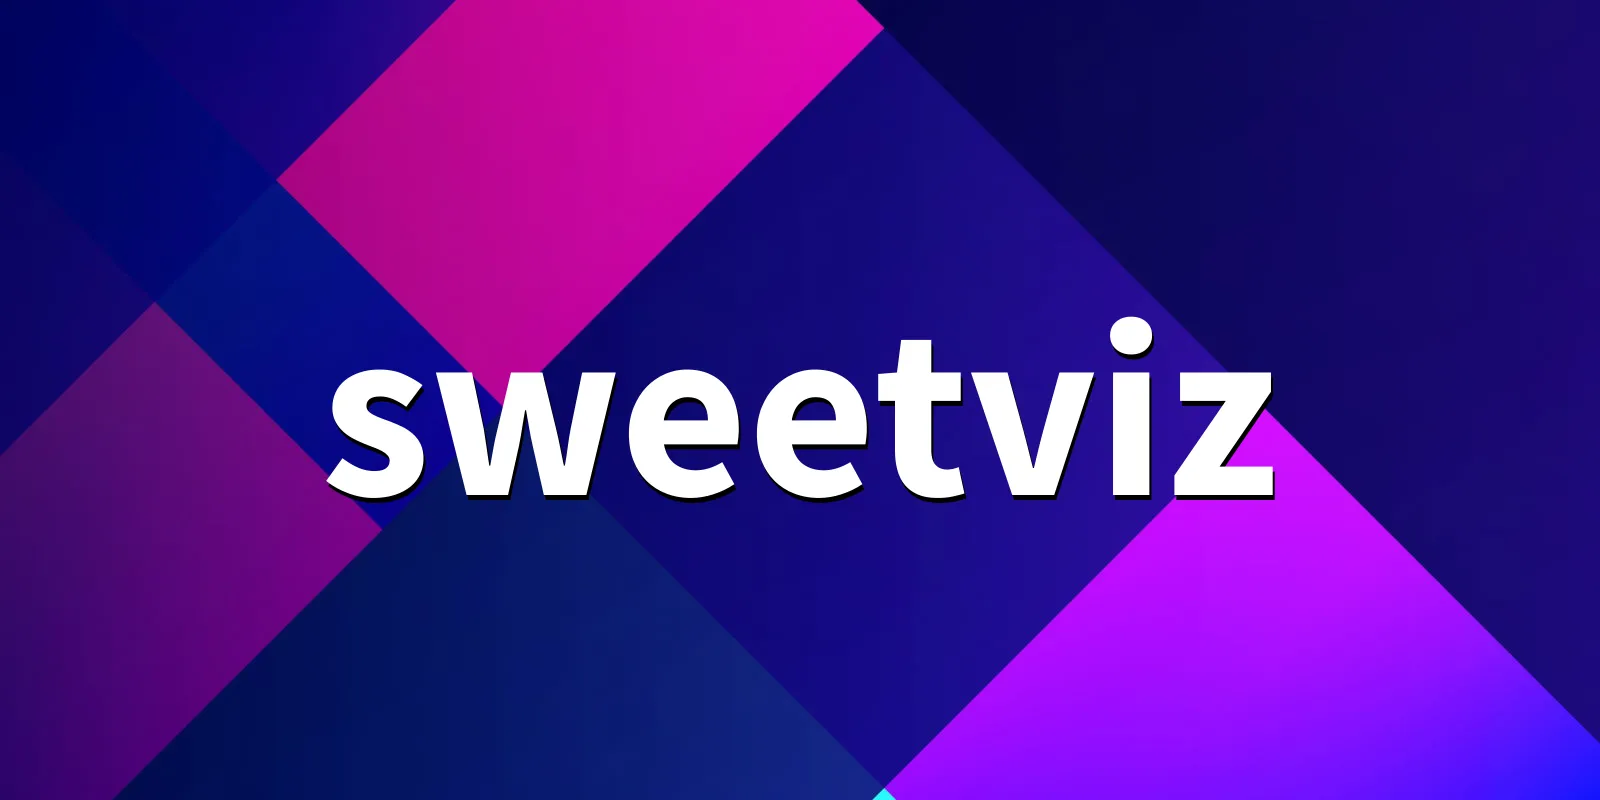 /pkg/s/sweetviz/sweetviz-banner.webp